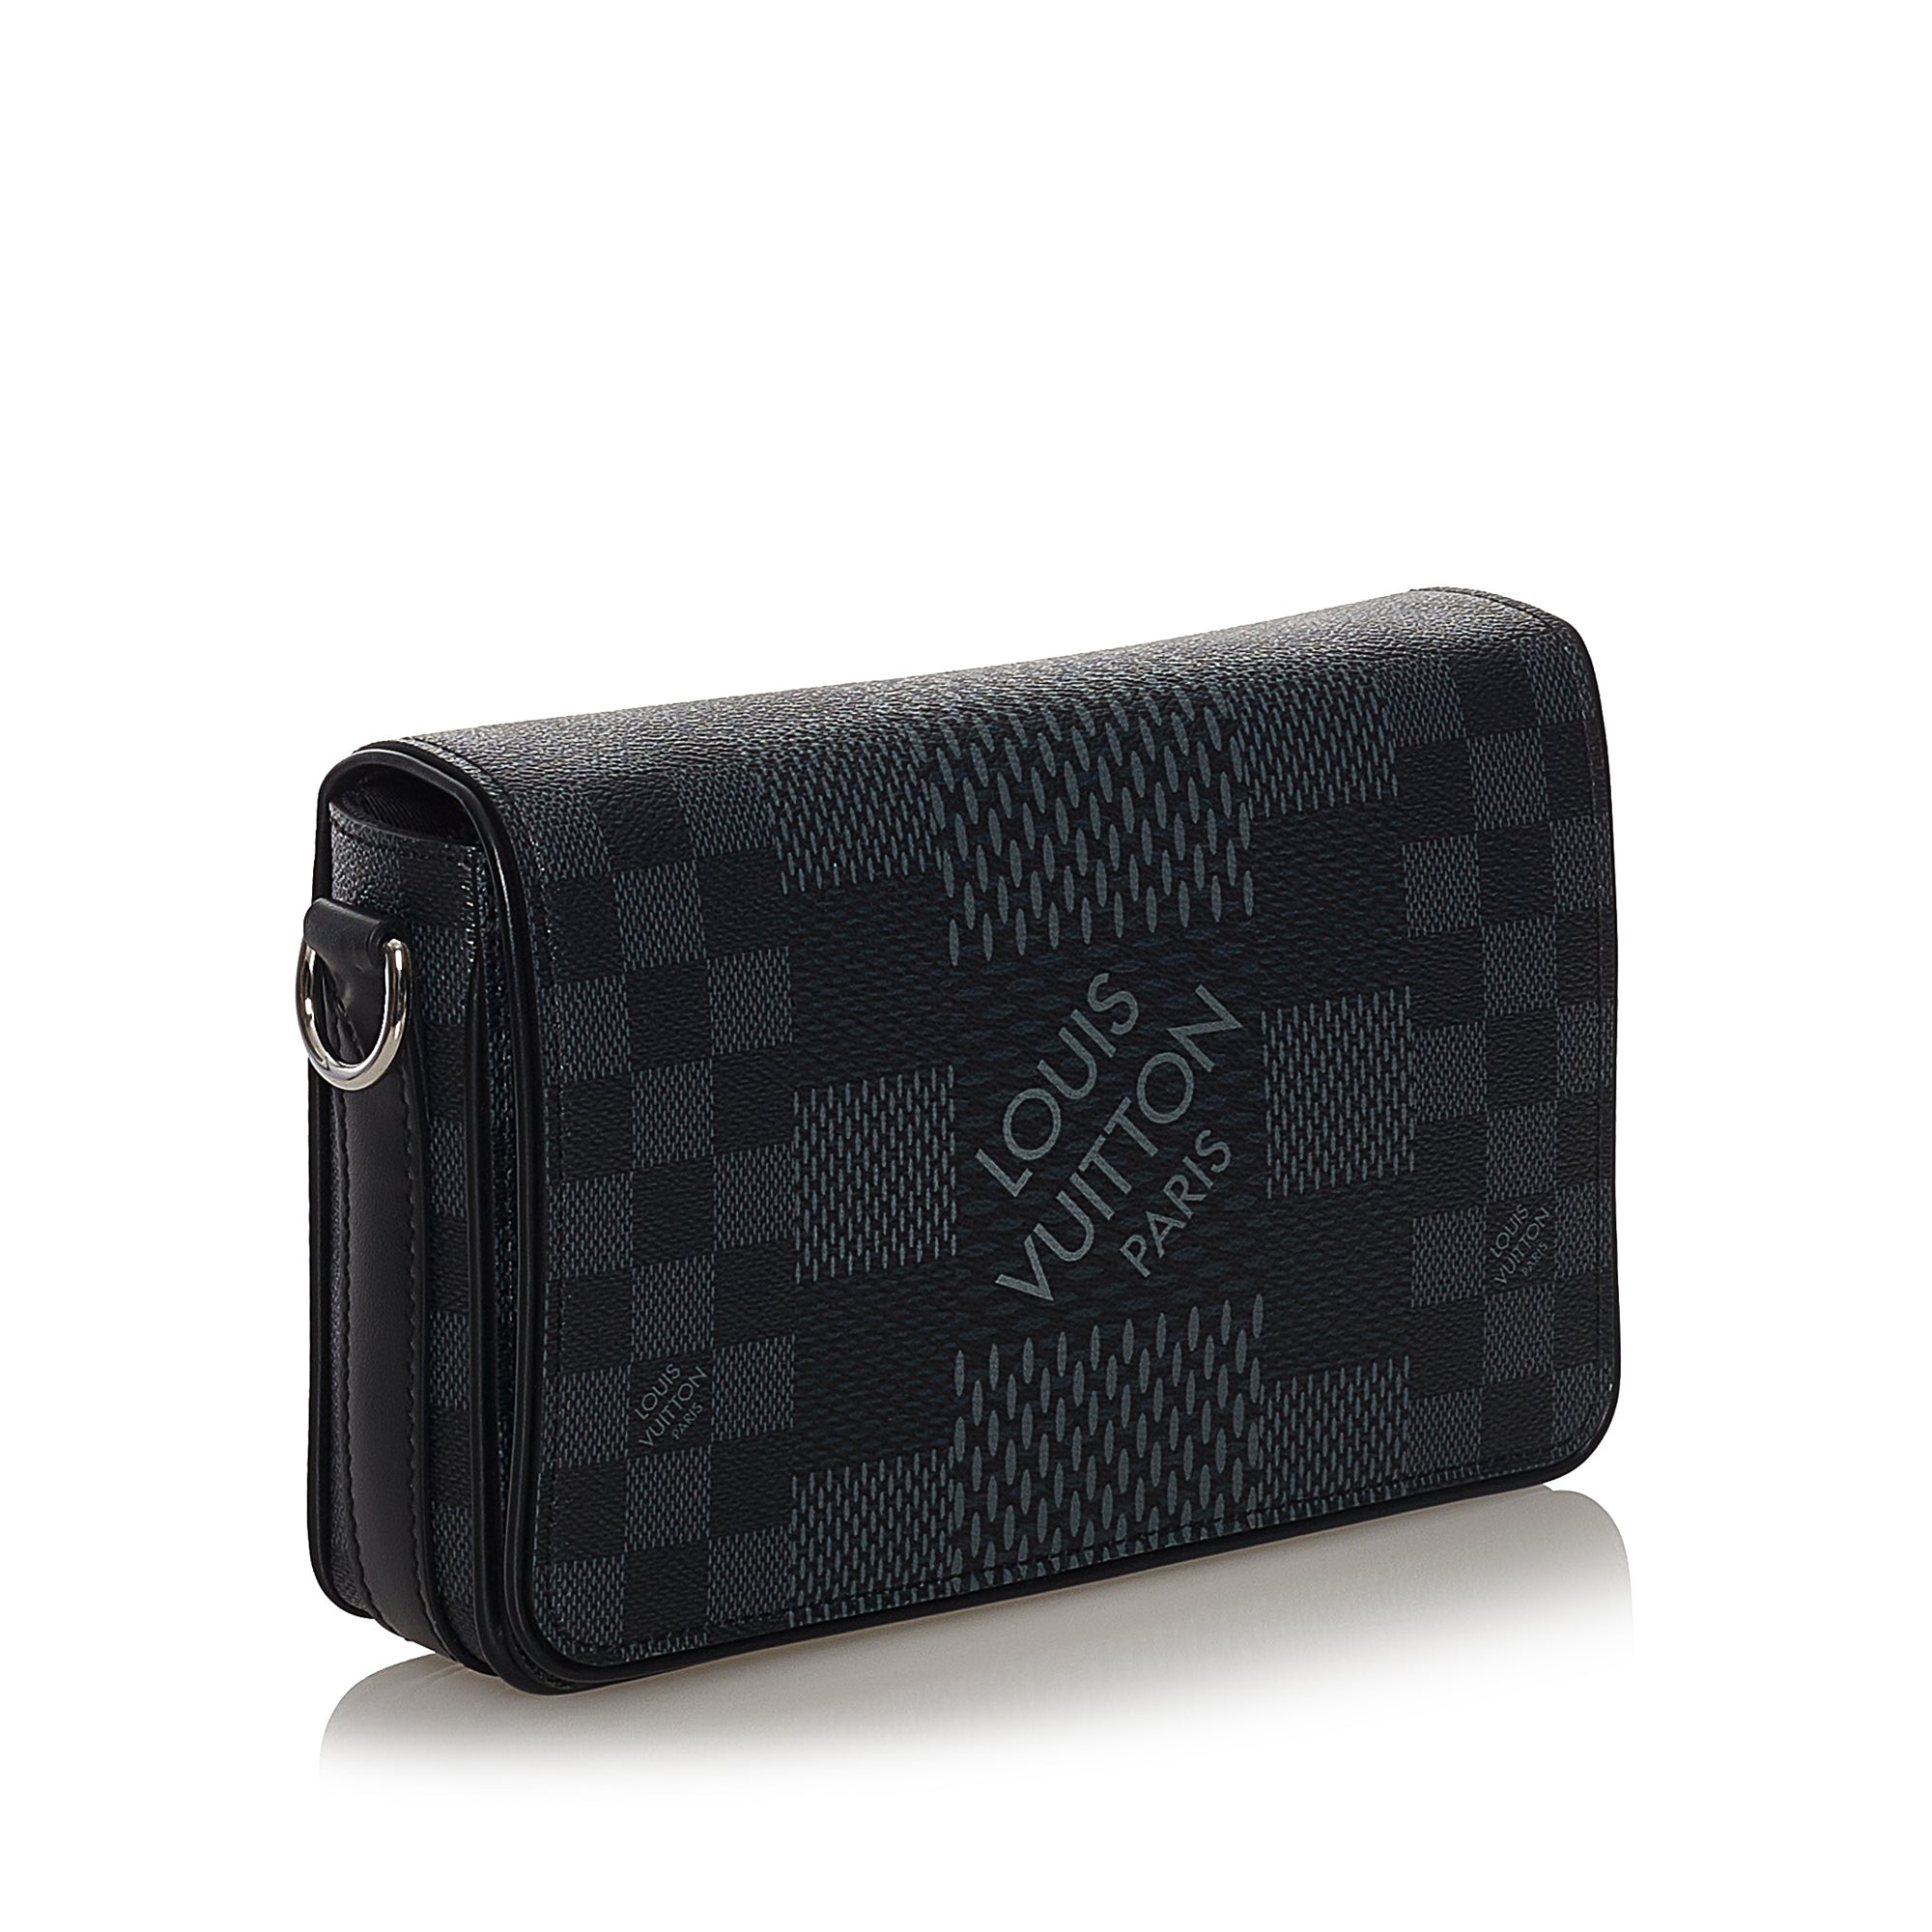 Louis Vuitton Damier Graphite 3G iPhone Case 417lv528